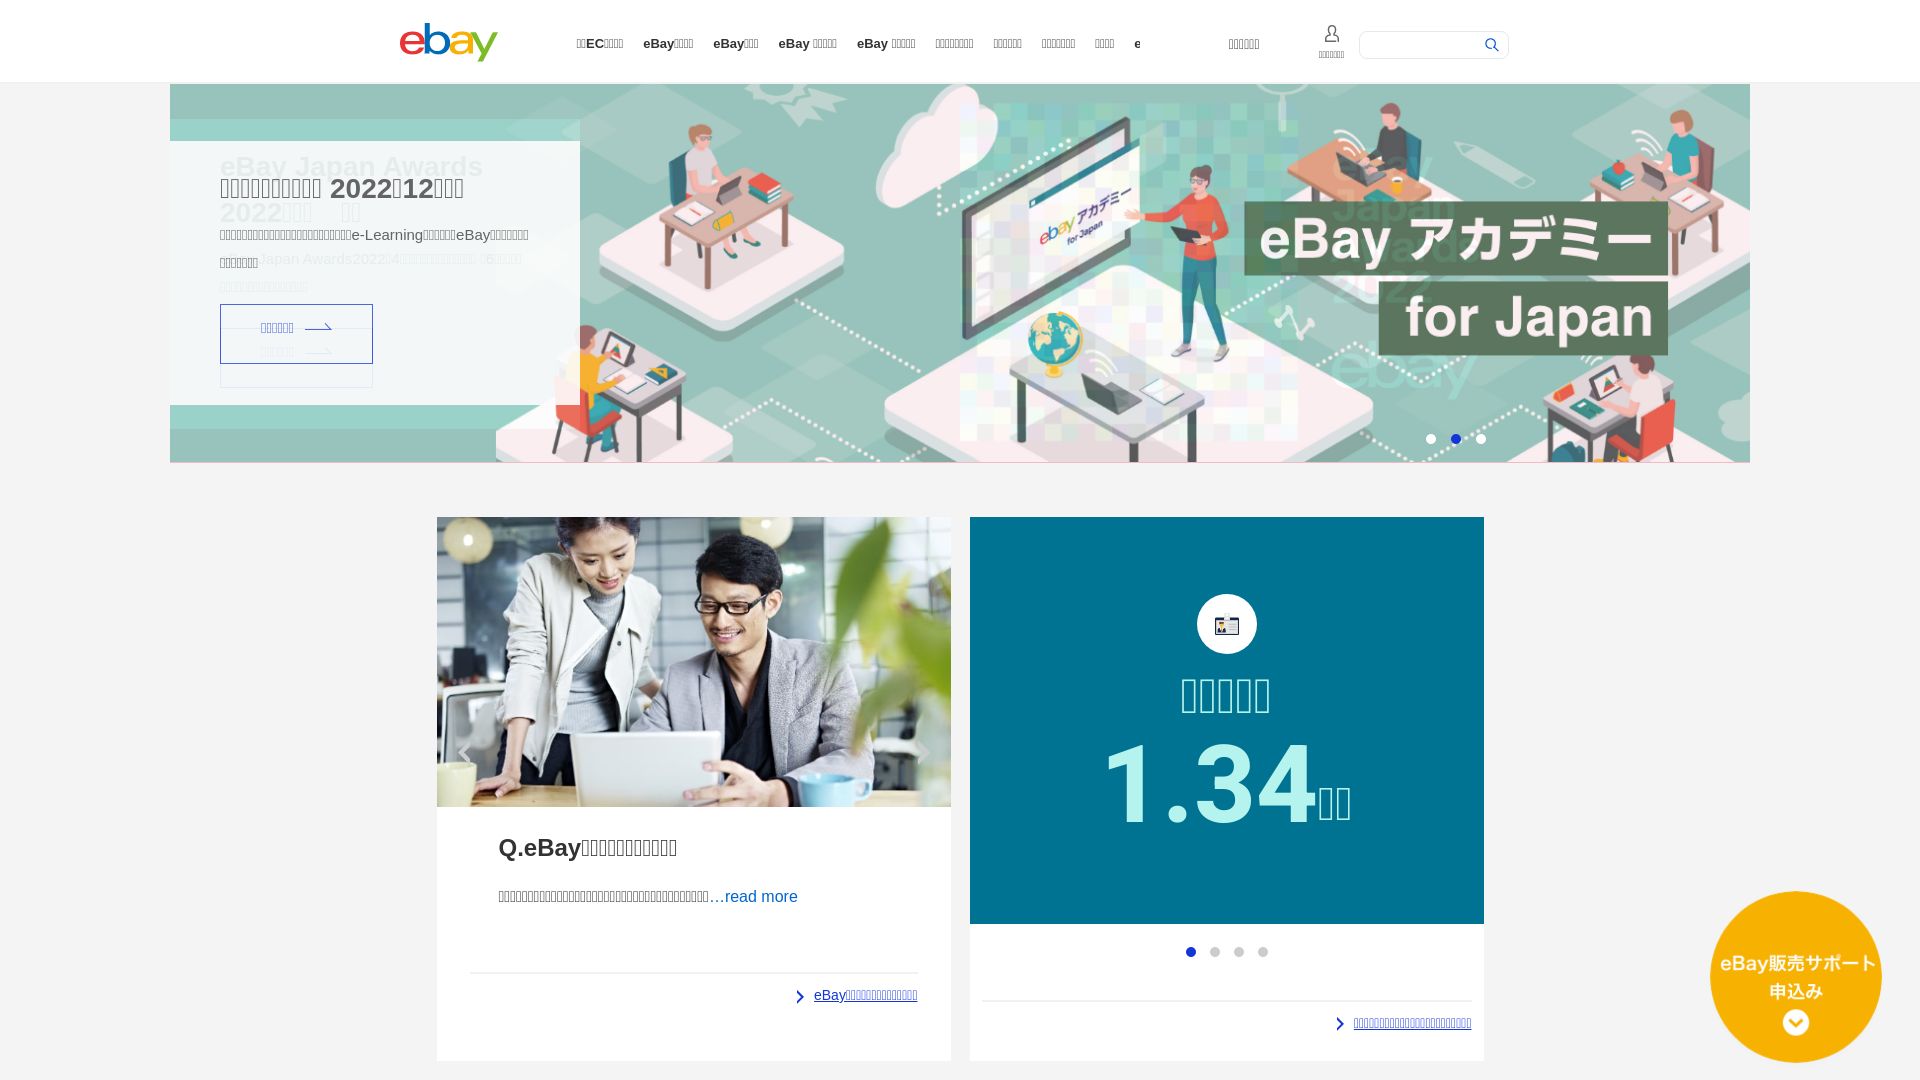 网站状态 ebay.co.jp 是  在线的